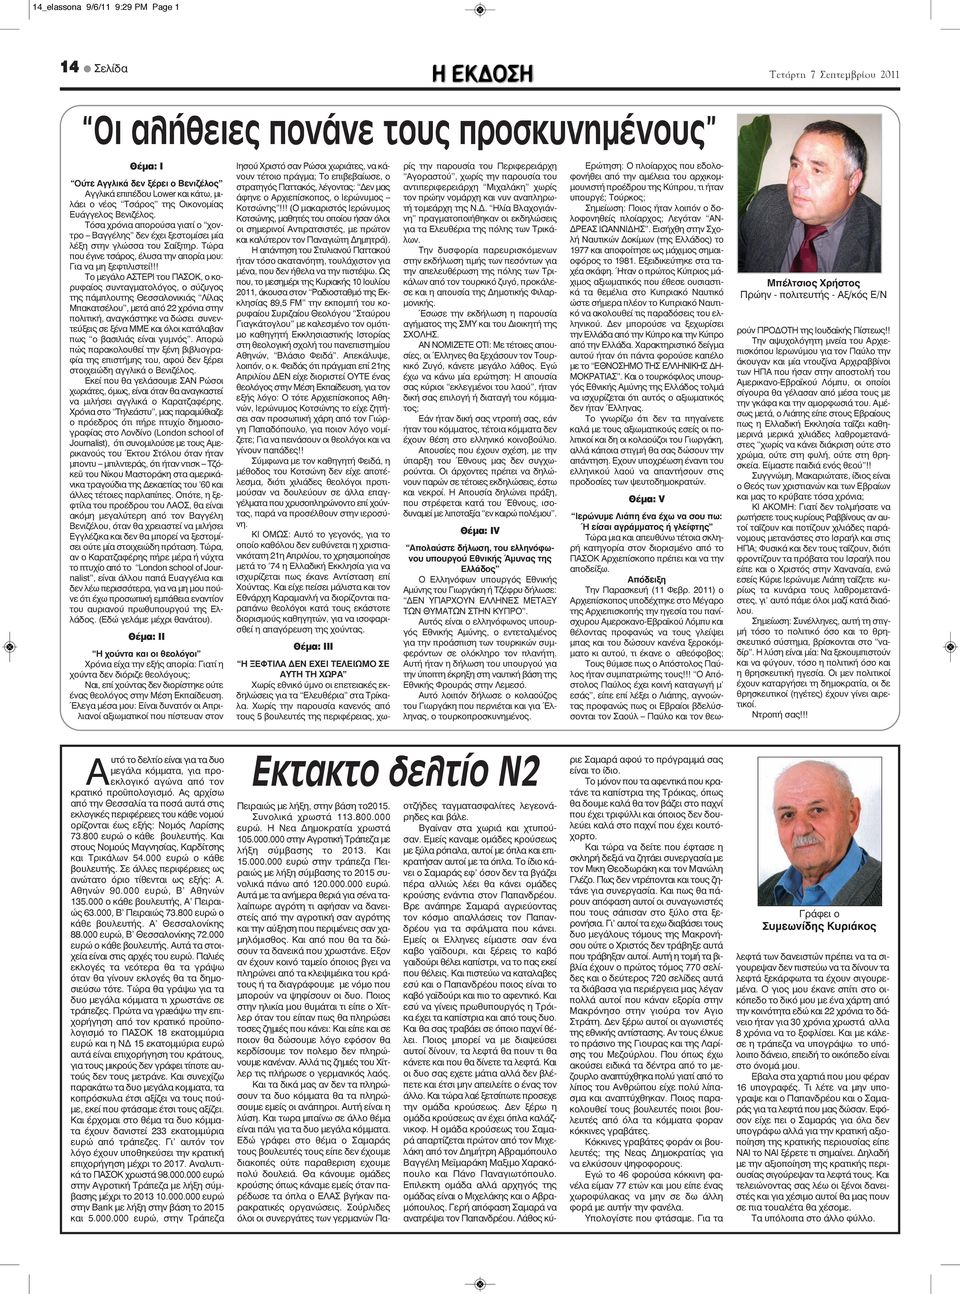 !! Το μεγάλο ΑΣΤΕΡΙ του ΠΑΣΟΚ, ο κορυφαίος συνταγματολόγος, ο σύζυγος της πάμπλουτης Θεσσαλονικιάς Λίλας Μπακατσέλου, μετά από 22 χρόνια στην πολιτική, αναγκάστηκε να δώσει συνεντεύξεις σε ξένα ΜΜΕ